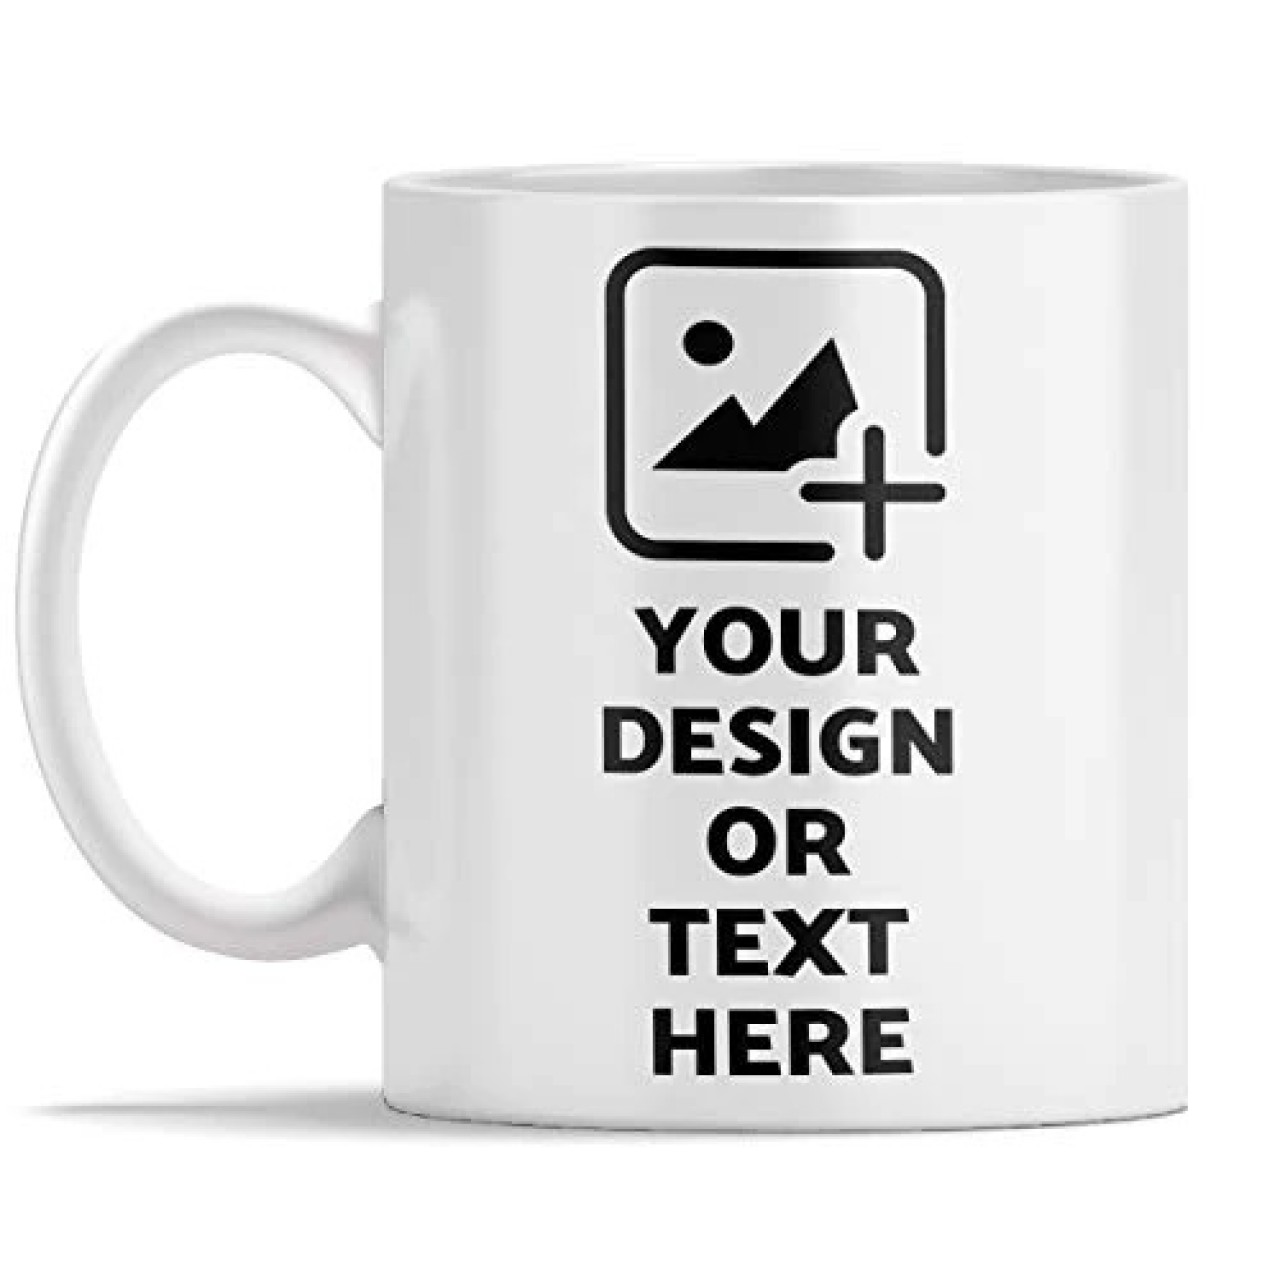 Customize your mug your way